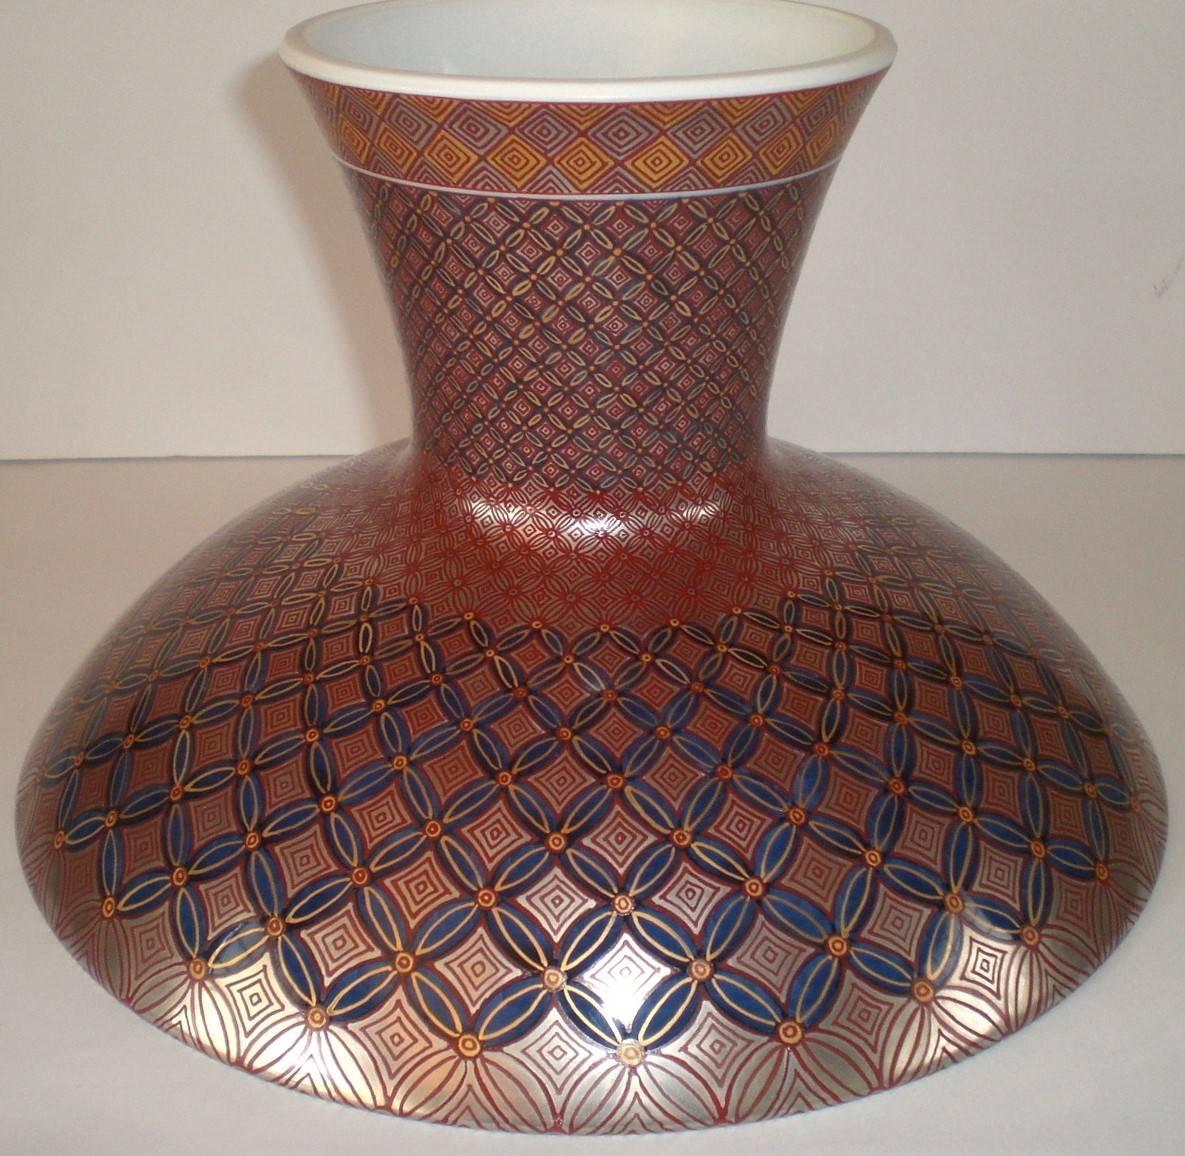 Japanese Gilded Red Blue Imari Porcelain Bowl on Pedestal by Master Artist, 2018 (Vergoldet)